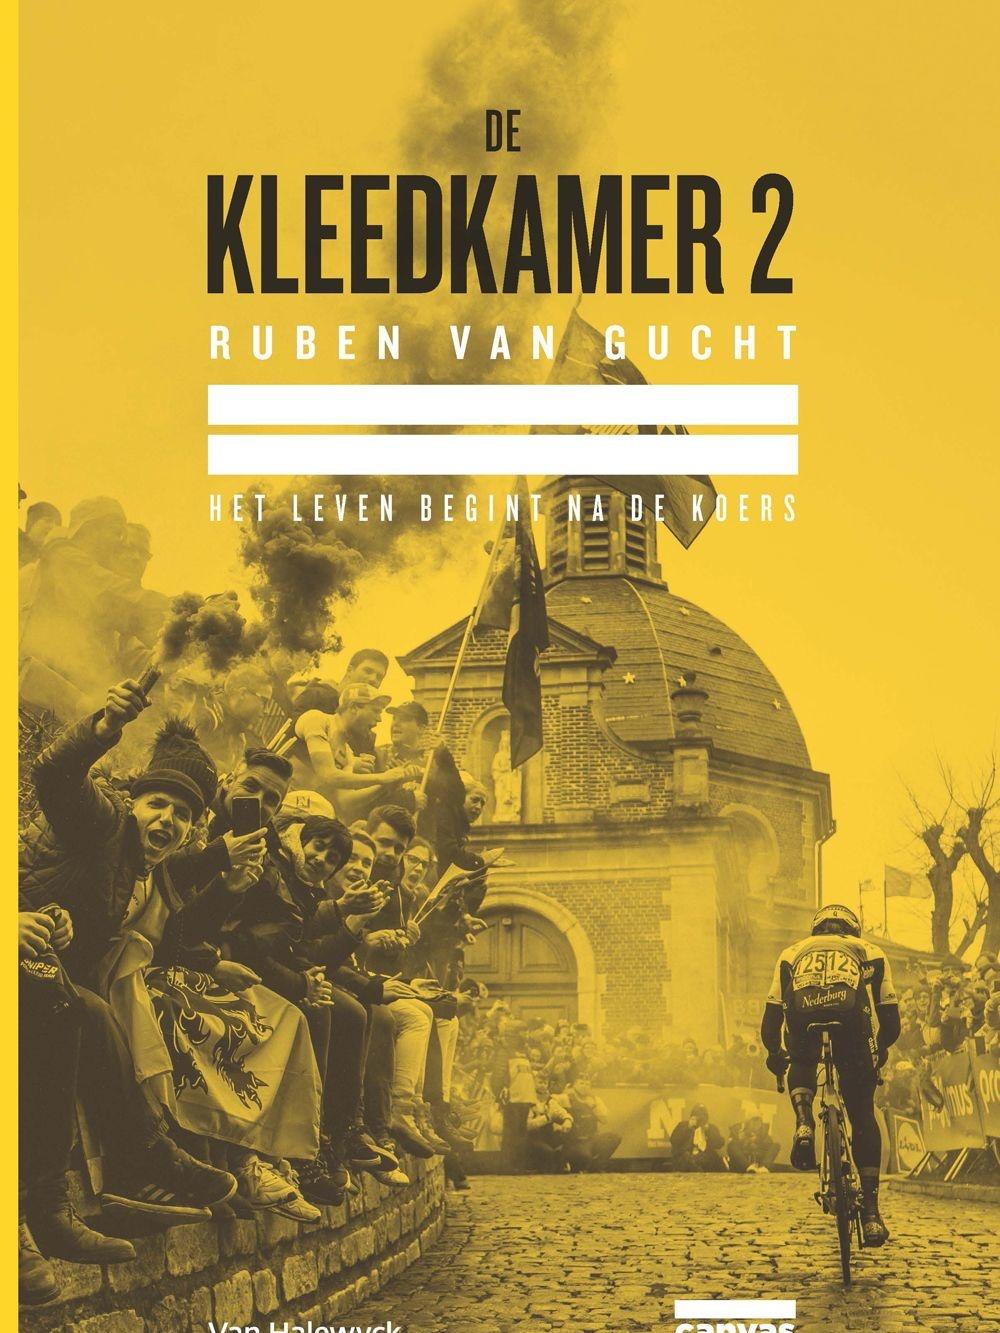 De Kleedkamer 2 / Ruben Van Gucht / ISBN 978-94-6131-980-7 / 22,5 euro